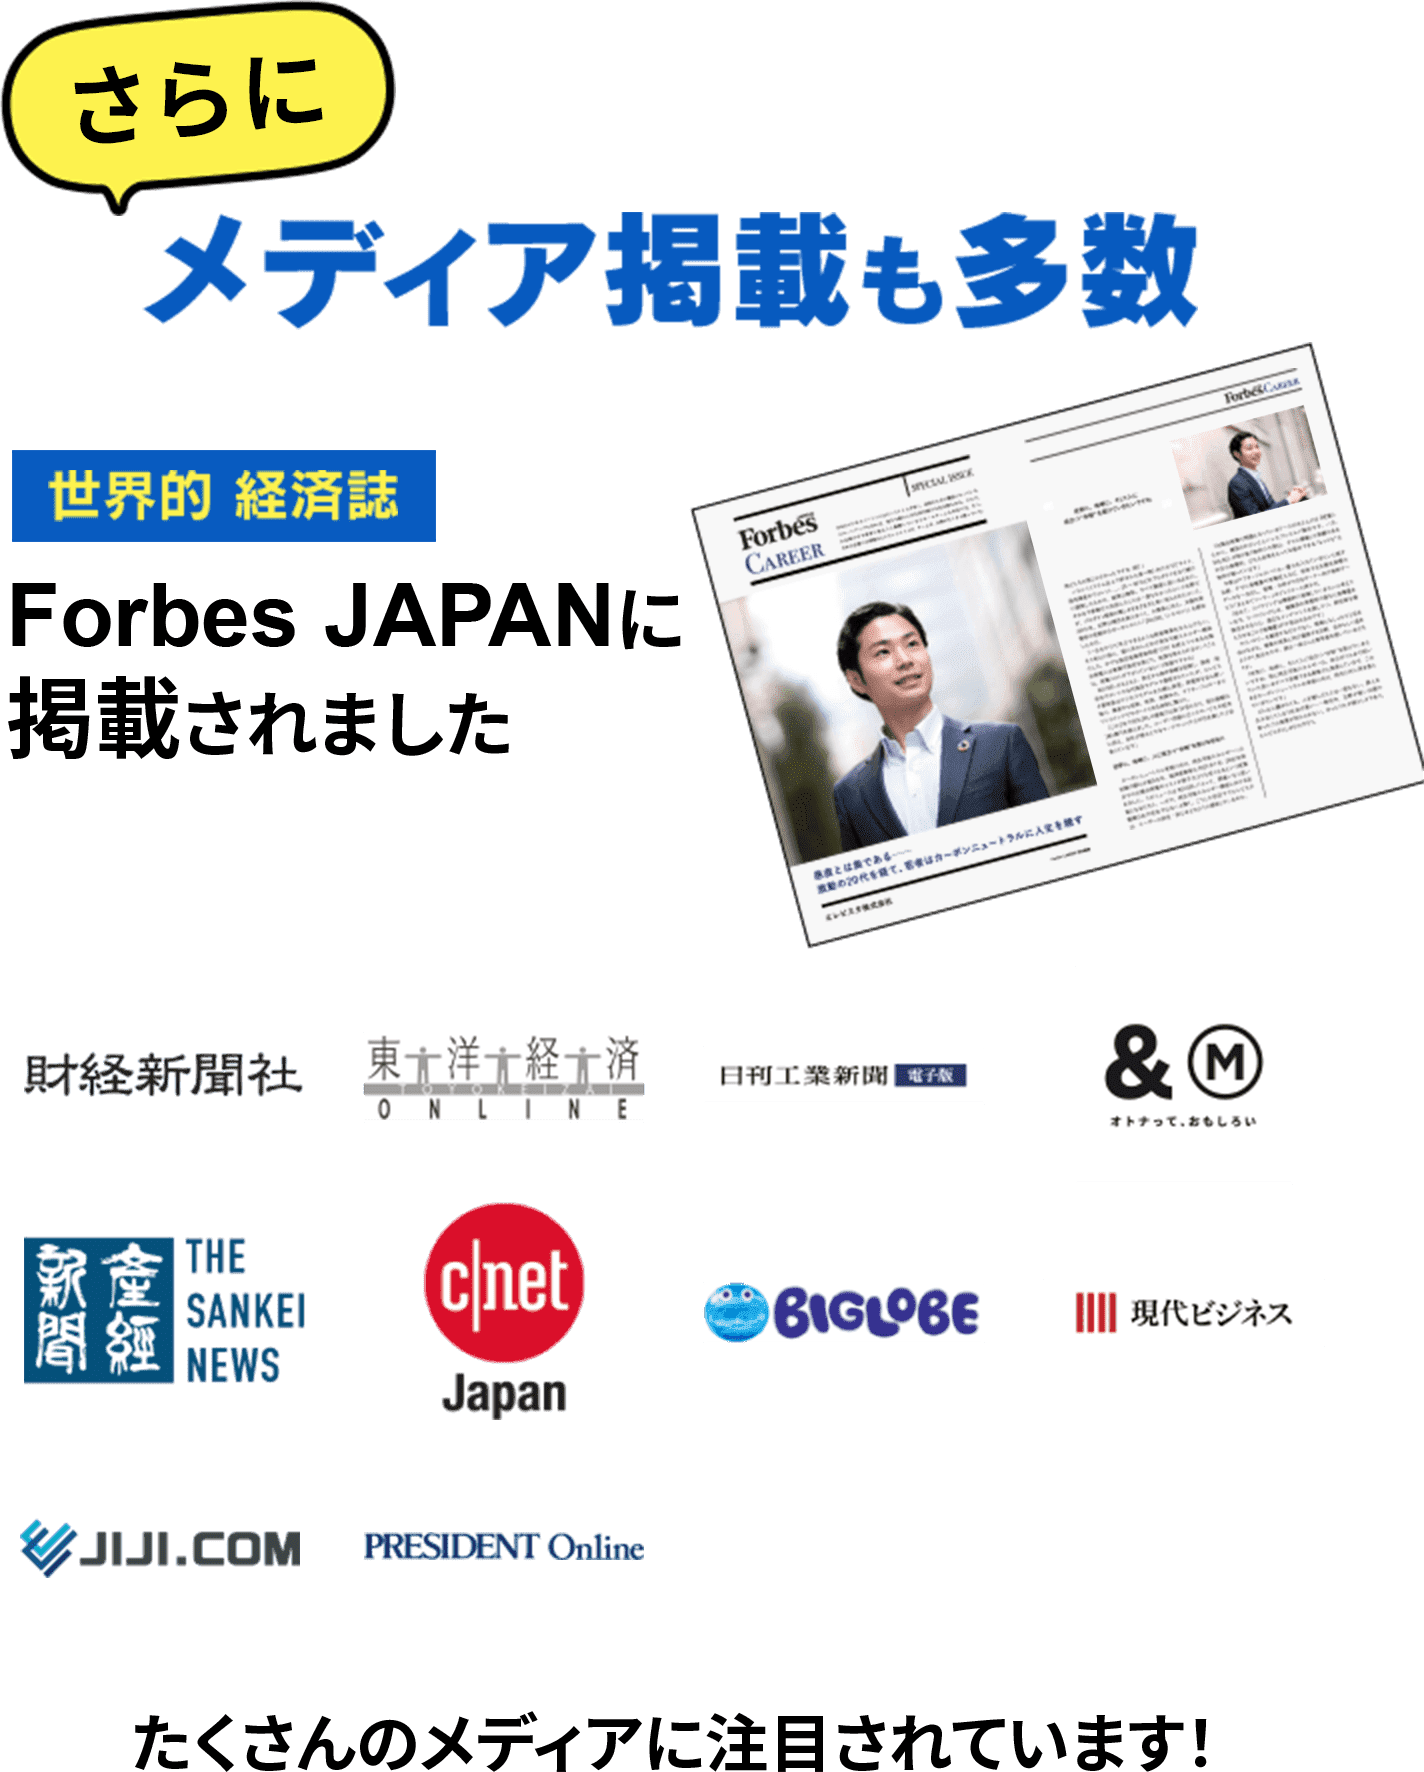 さらにメディア掲載も多数 世界的経済誌Forbes JAPANに掲載されました